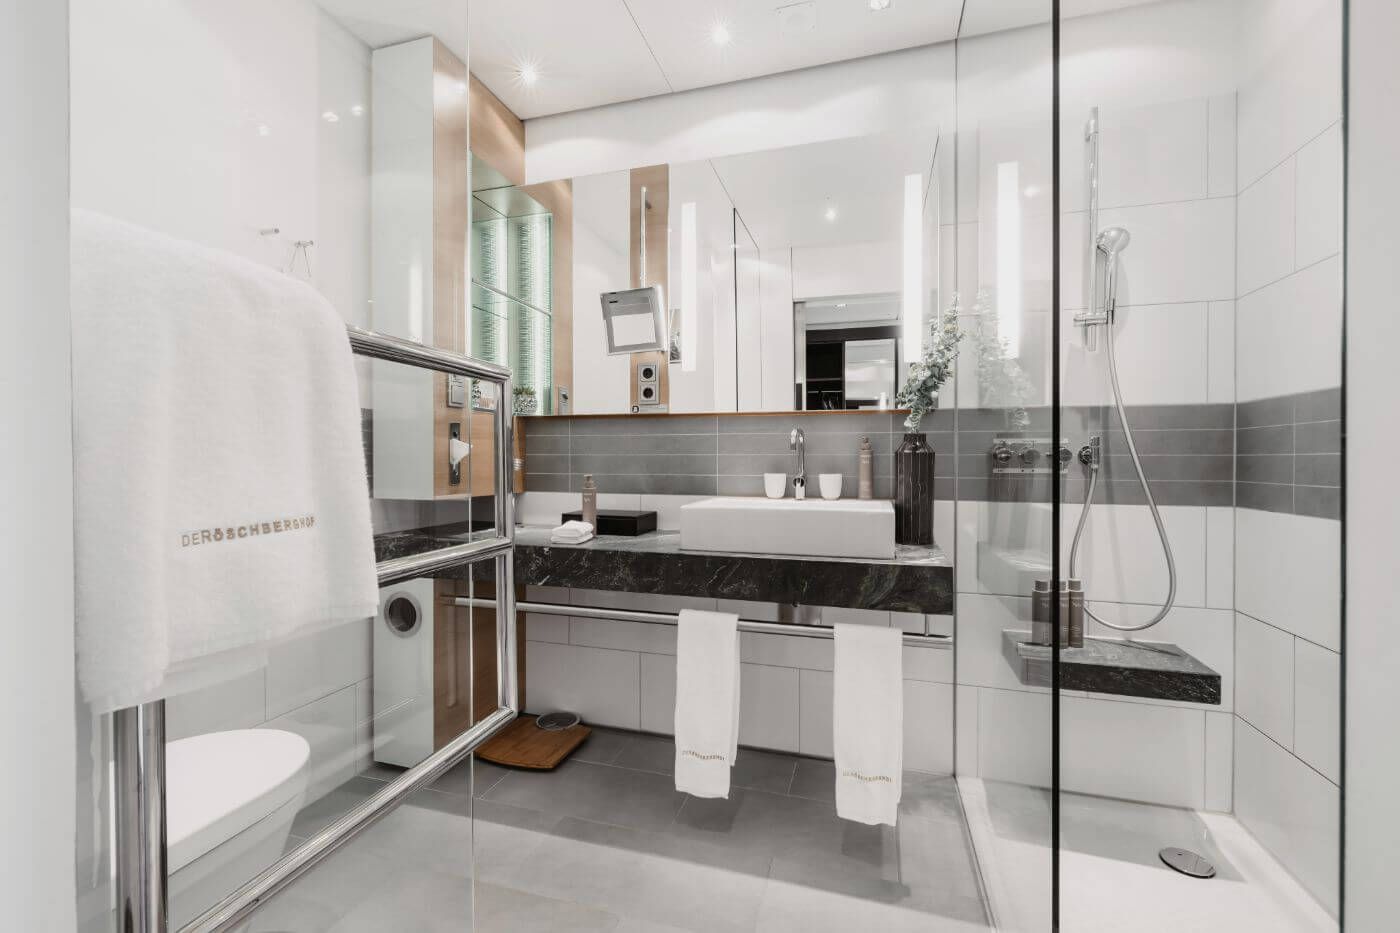 Helles Badezimmer mit Dusche und großem Spiegel über einem Waschbecken